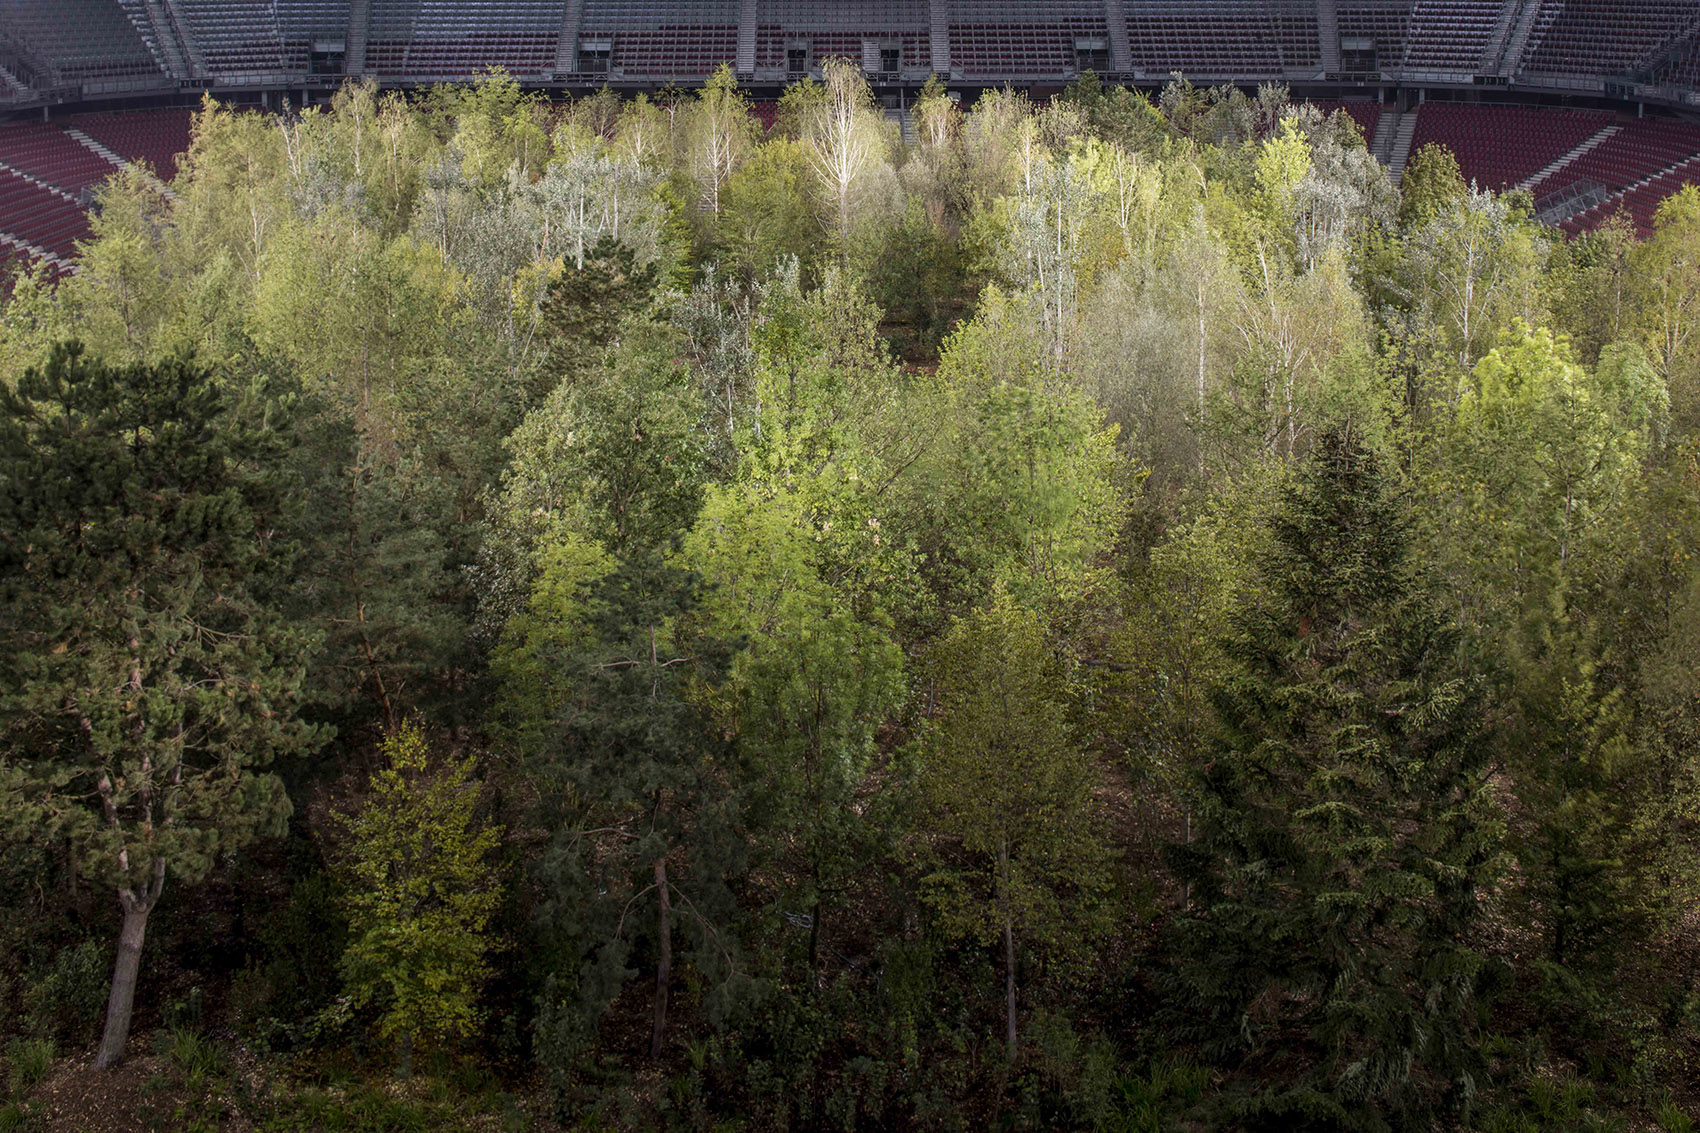 “致森林——自然不倦的魅力”展览，奥地利/足球场变身欧洲中部森林-41